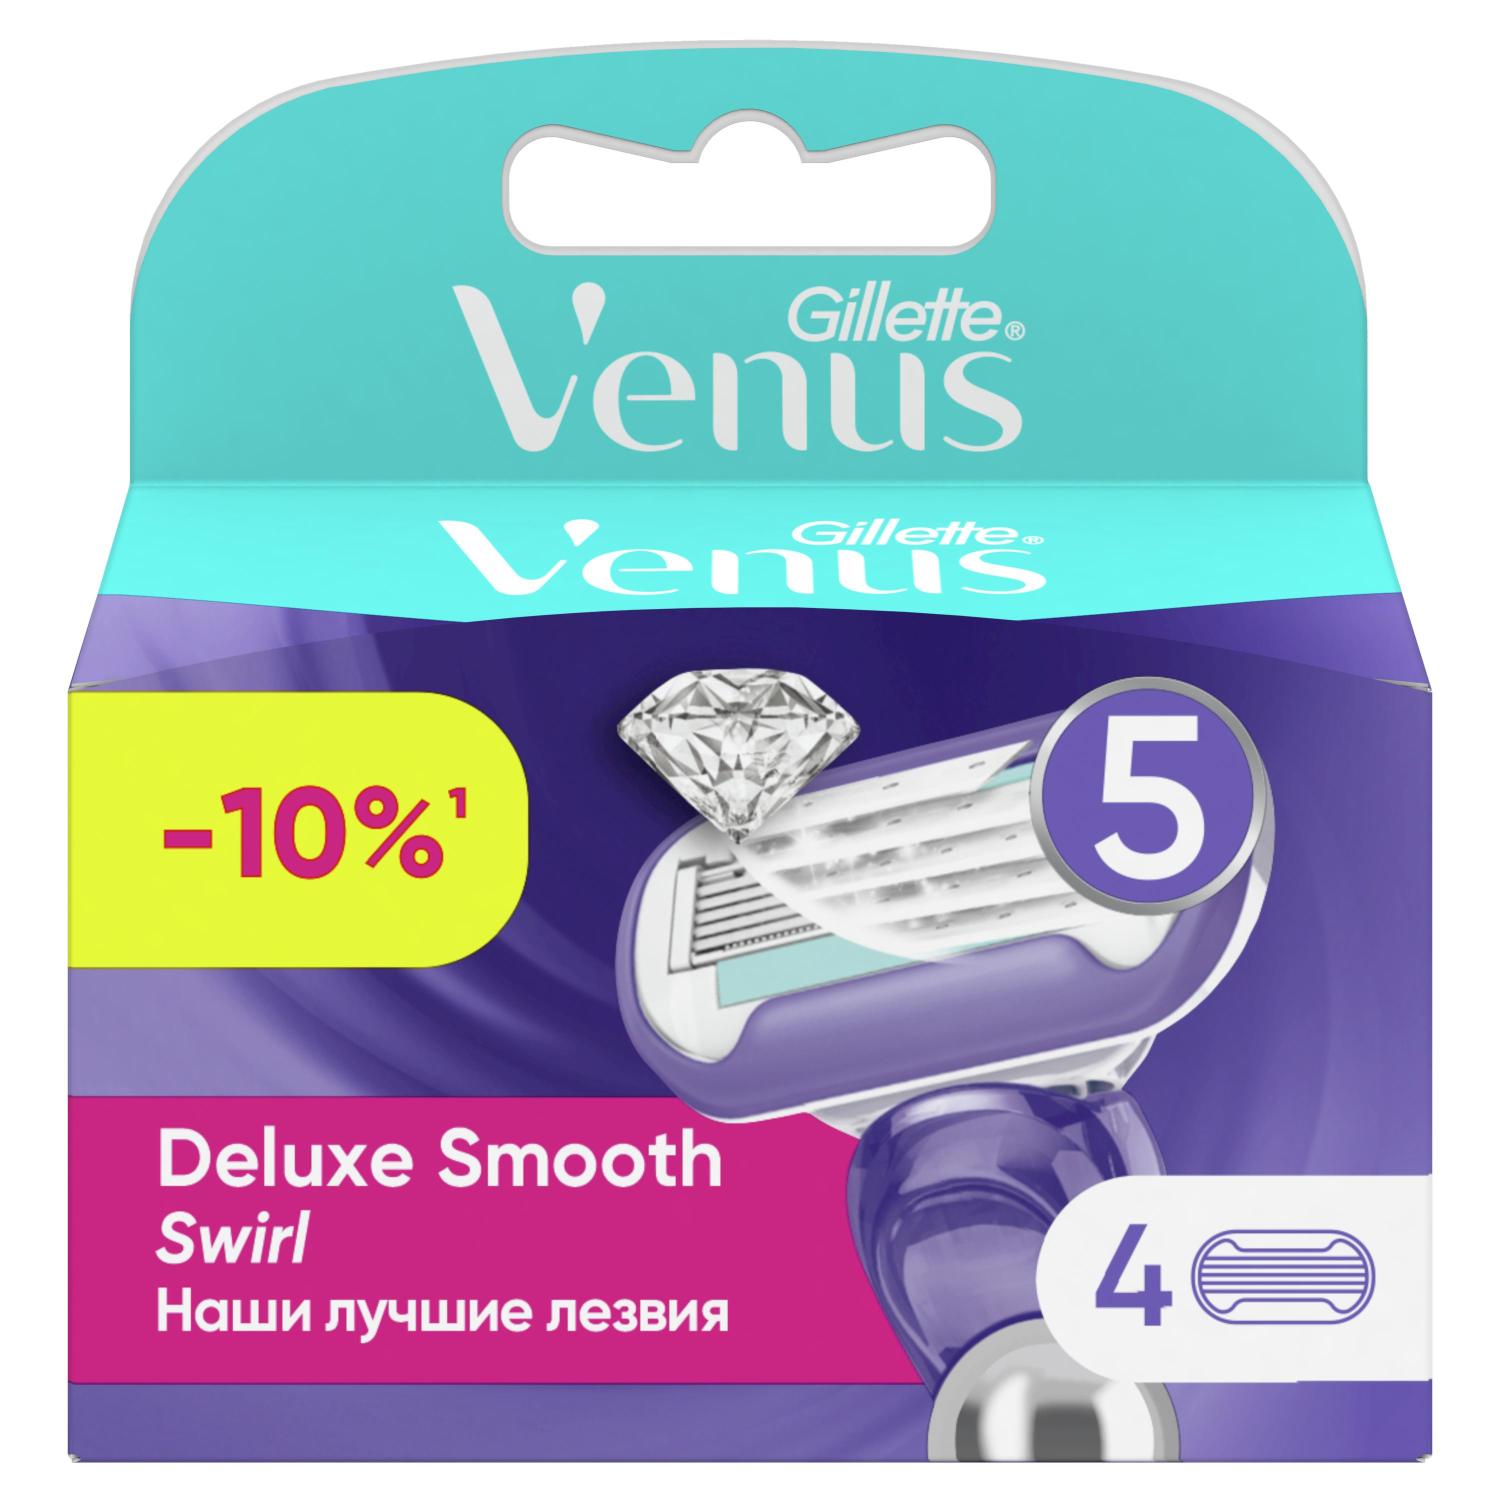 Жилетт Венус Свирл сменные кассеты для бритья №4 жилетт венус эмбрейс сменные кассеты для бритья 6